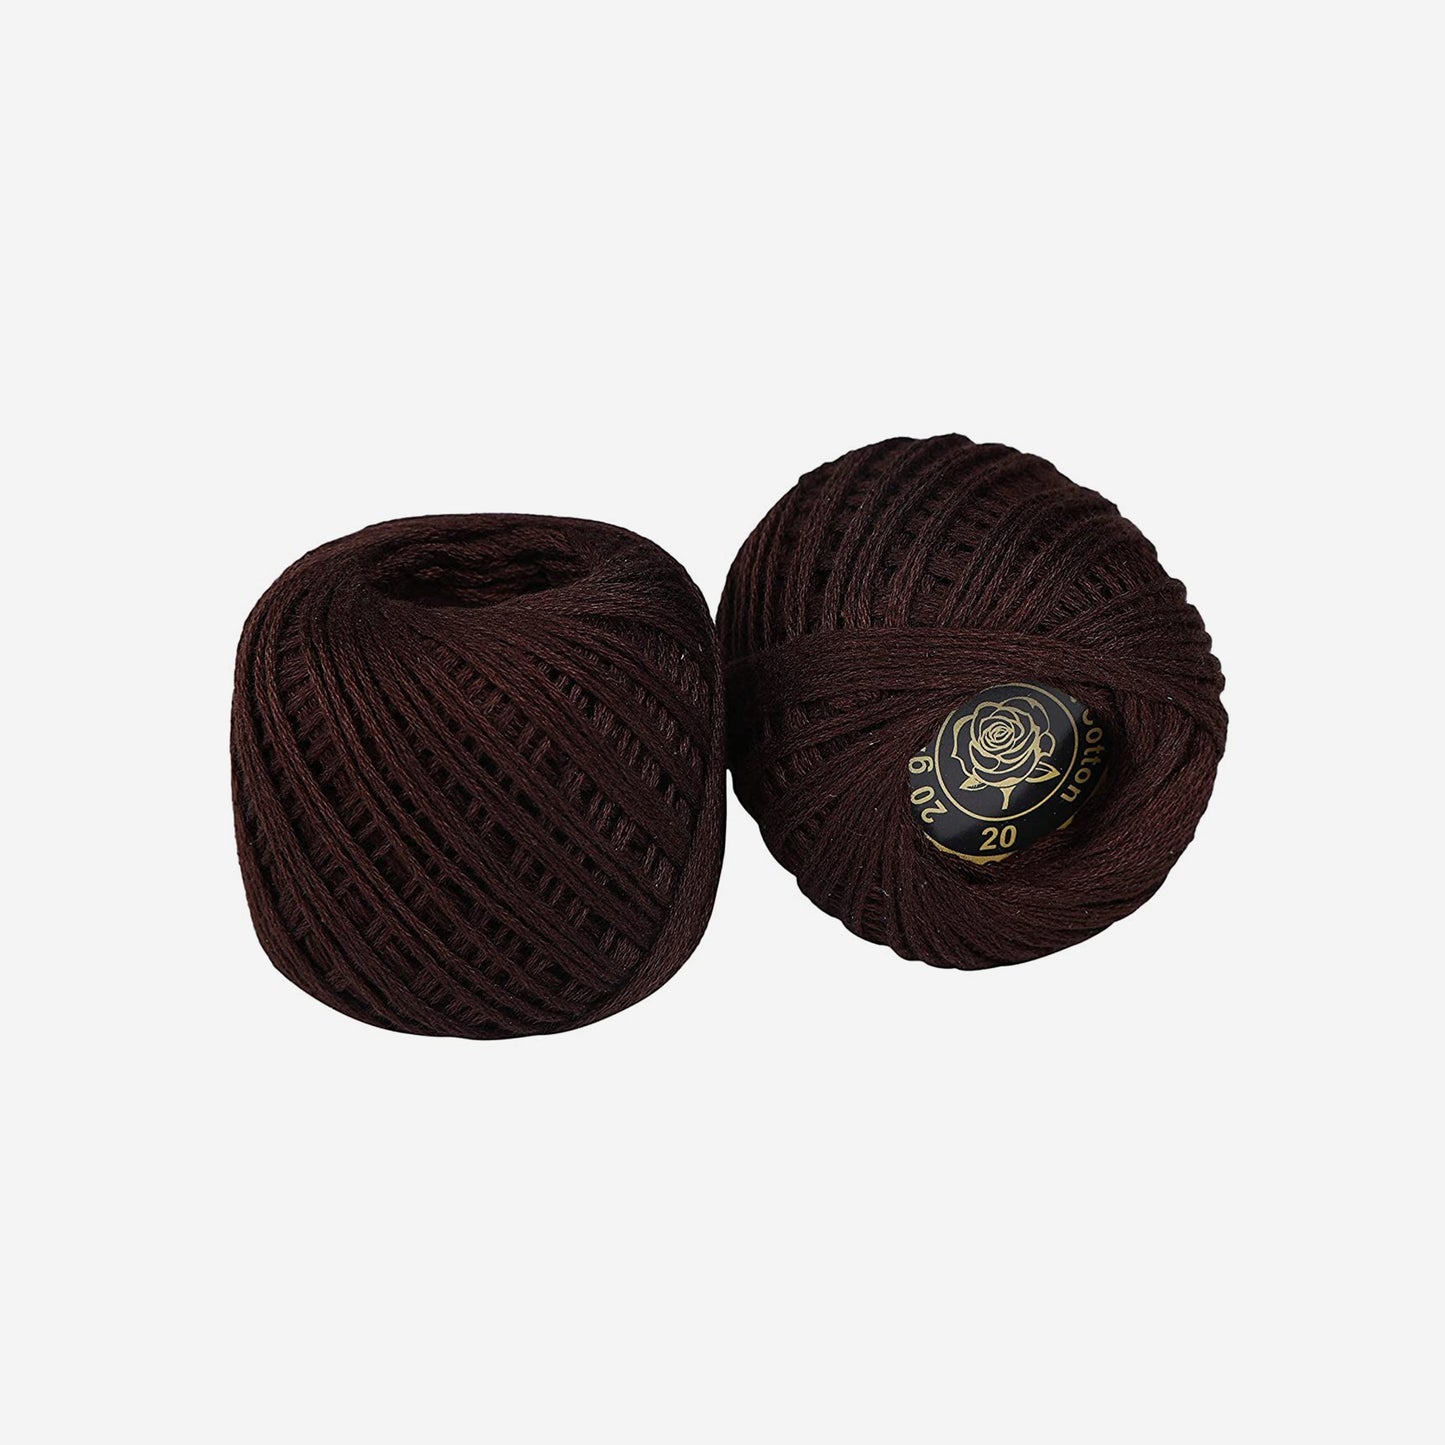 Hand-crochet hoops (Variation 22)